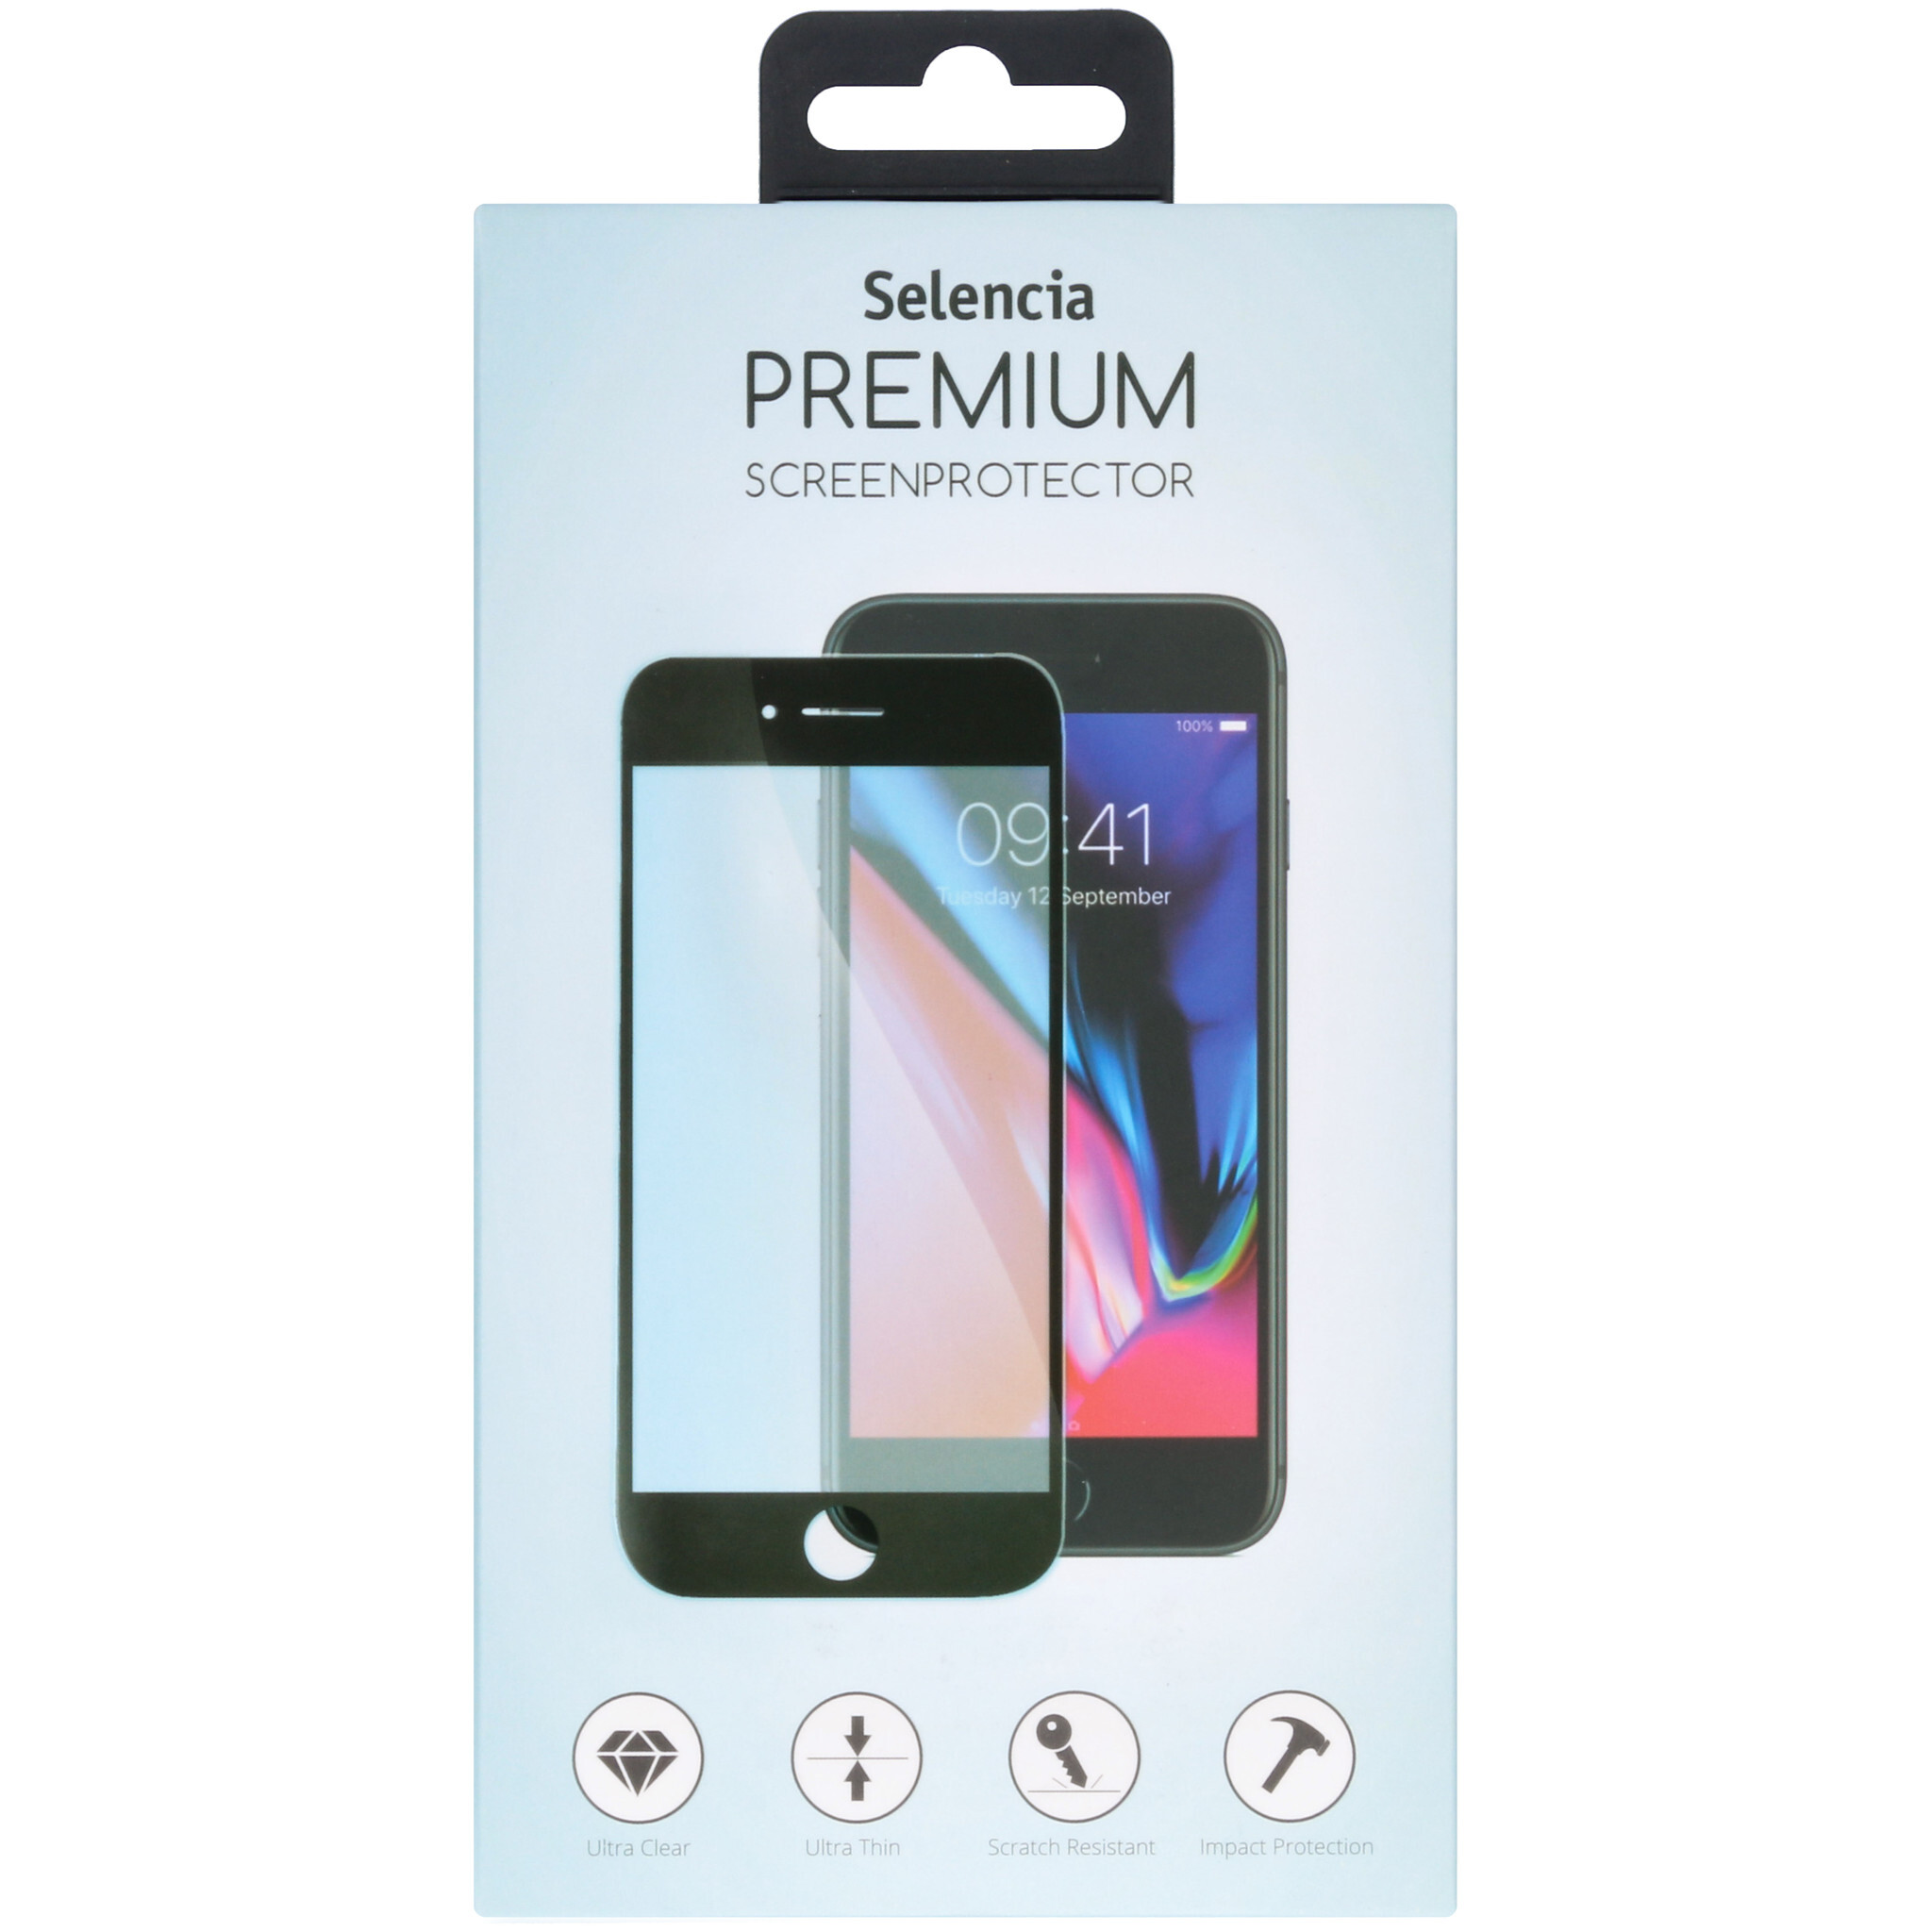 Selencia Glas Premium Screenprotector voor de Samsung Galaxy S20 Plus - Zwart